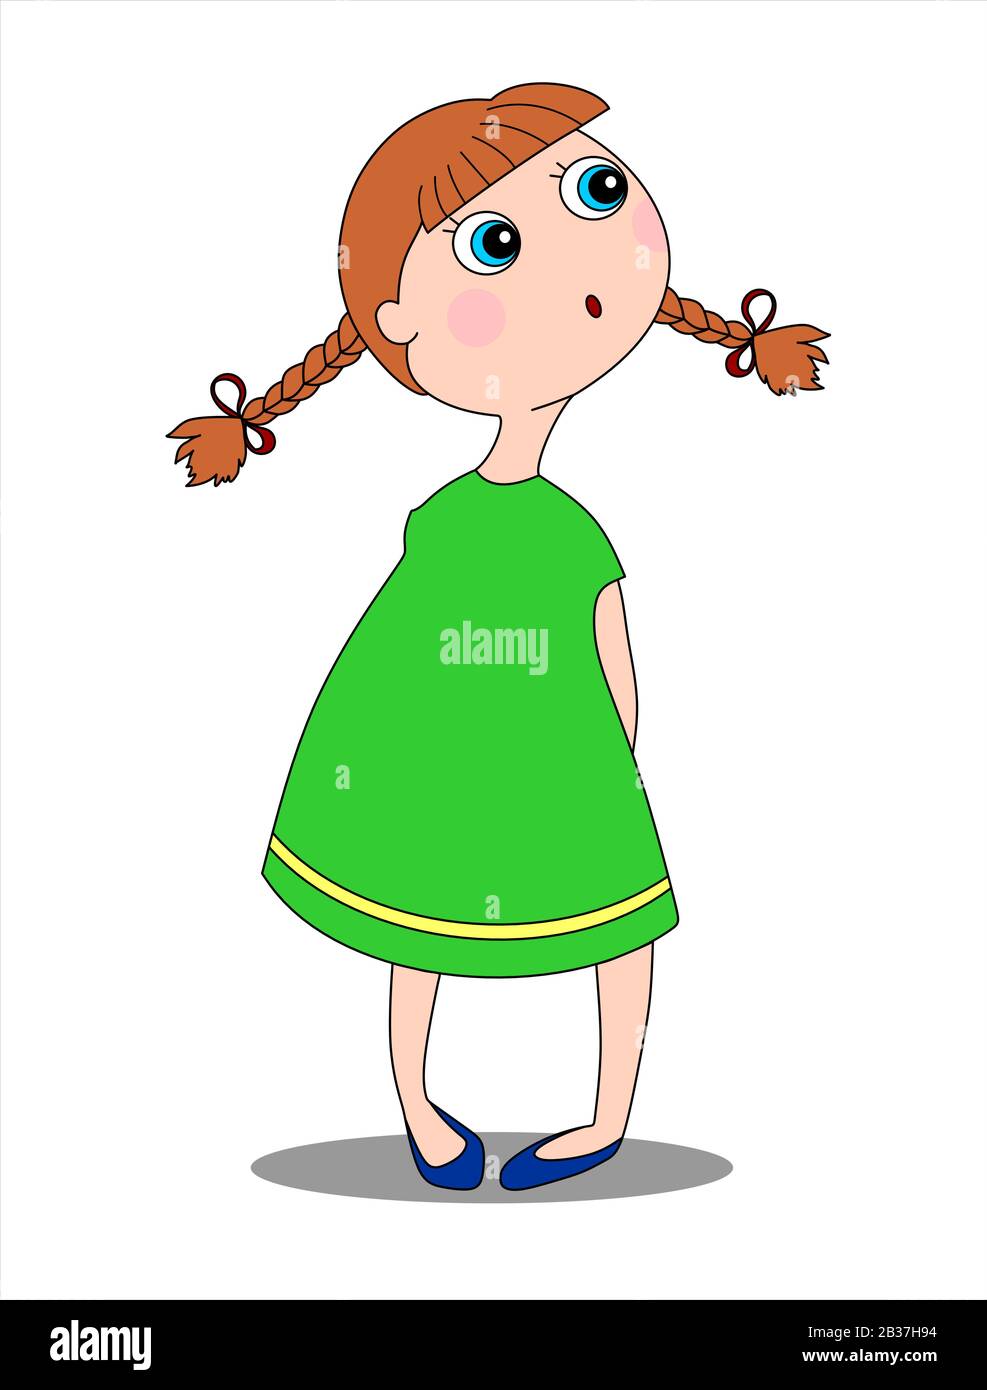 Sorpresa bambina con occhi blu, capelli rossi, intrecciata in pigtail, in un abito verde e scarpe blu sta guardando a sinistra. Immagine vettoriale isolata. Illustrazione Vettoriale